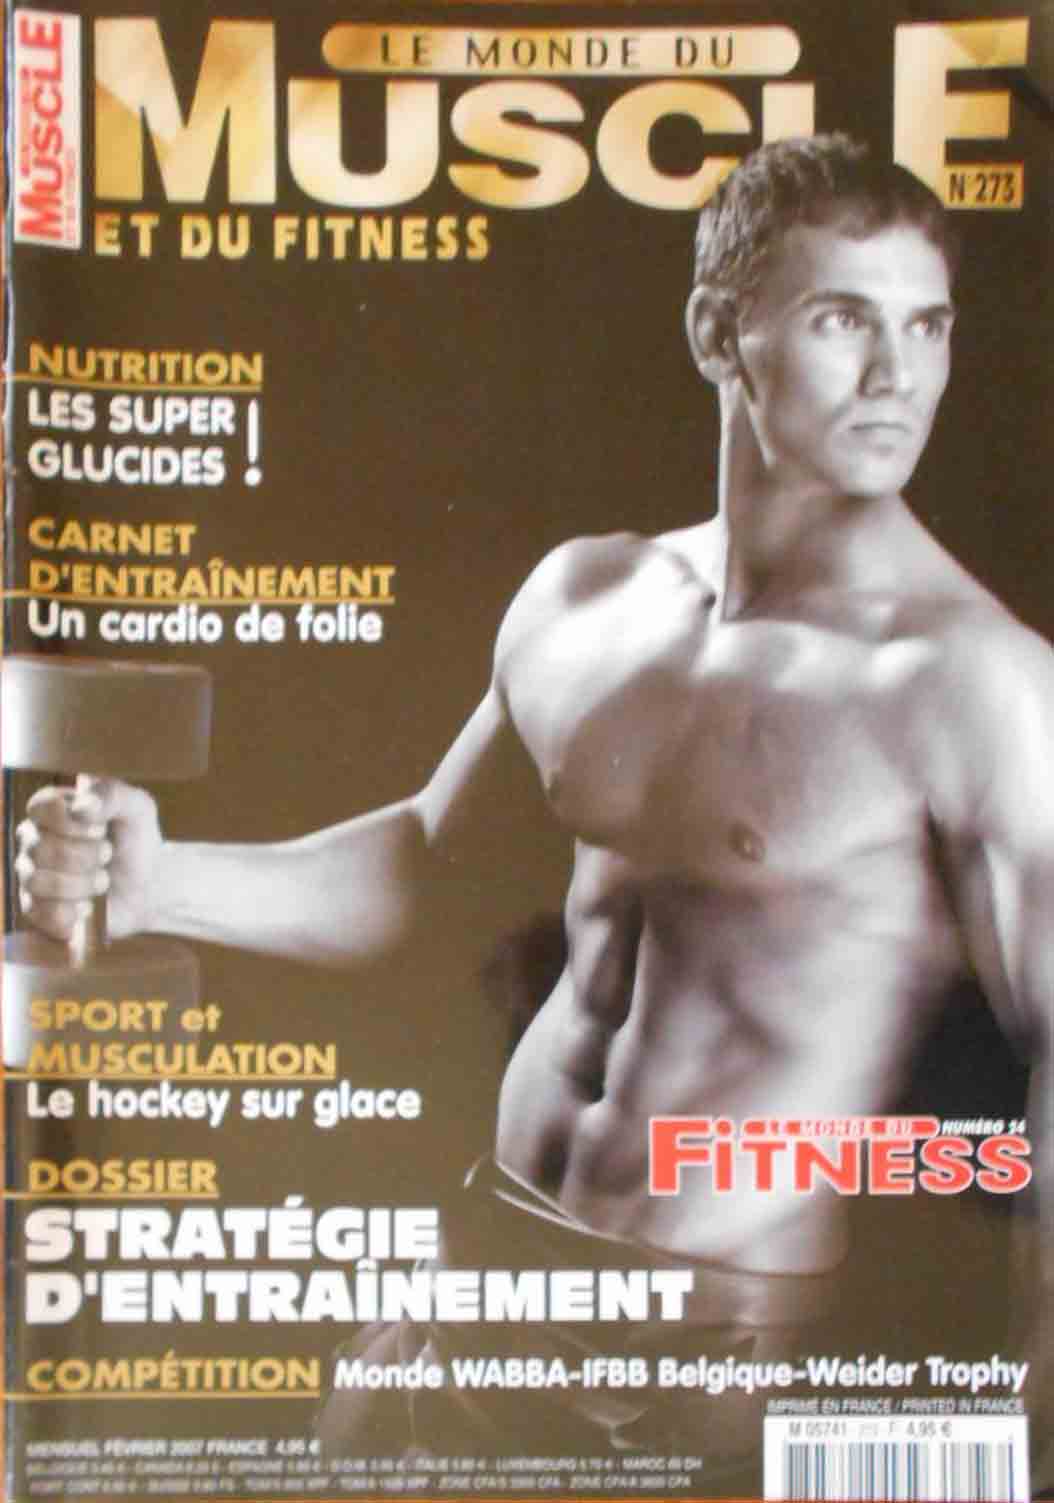 Le Monde du Muscle # 273 magazine back issue Le Monde du Muscle magizine back copy 